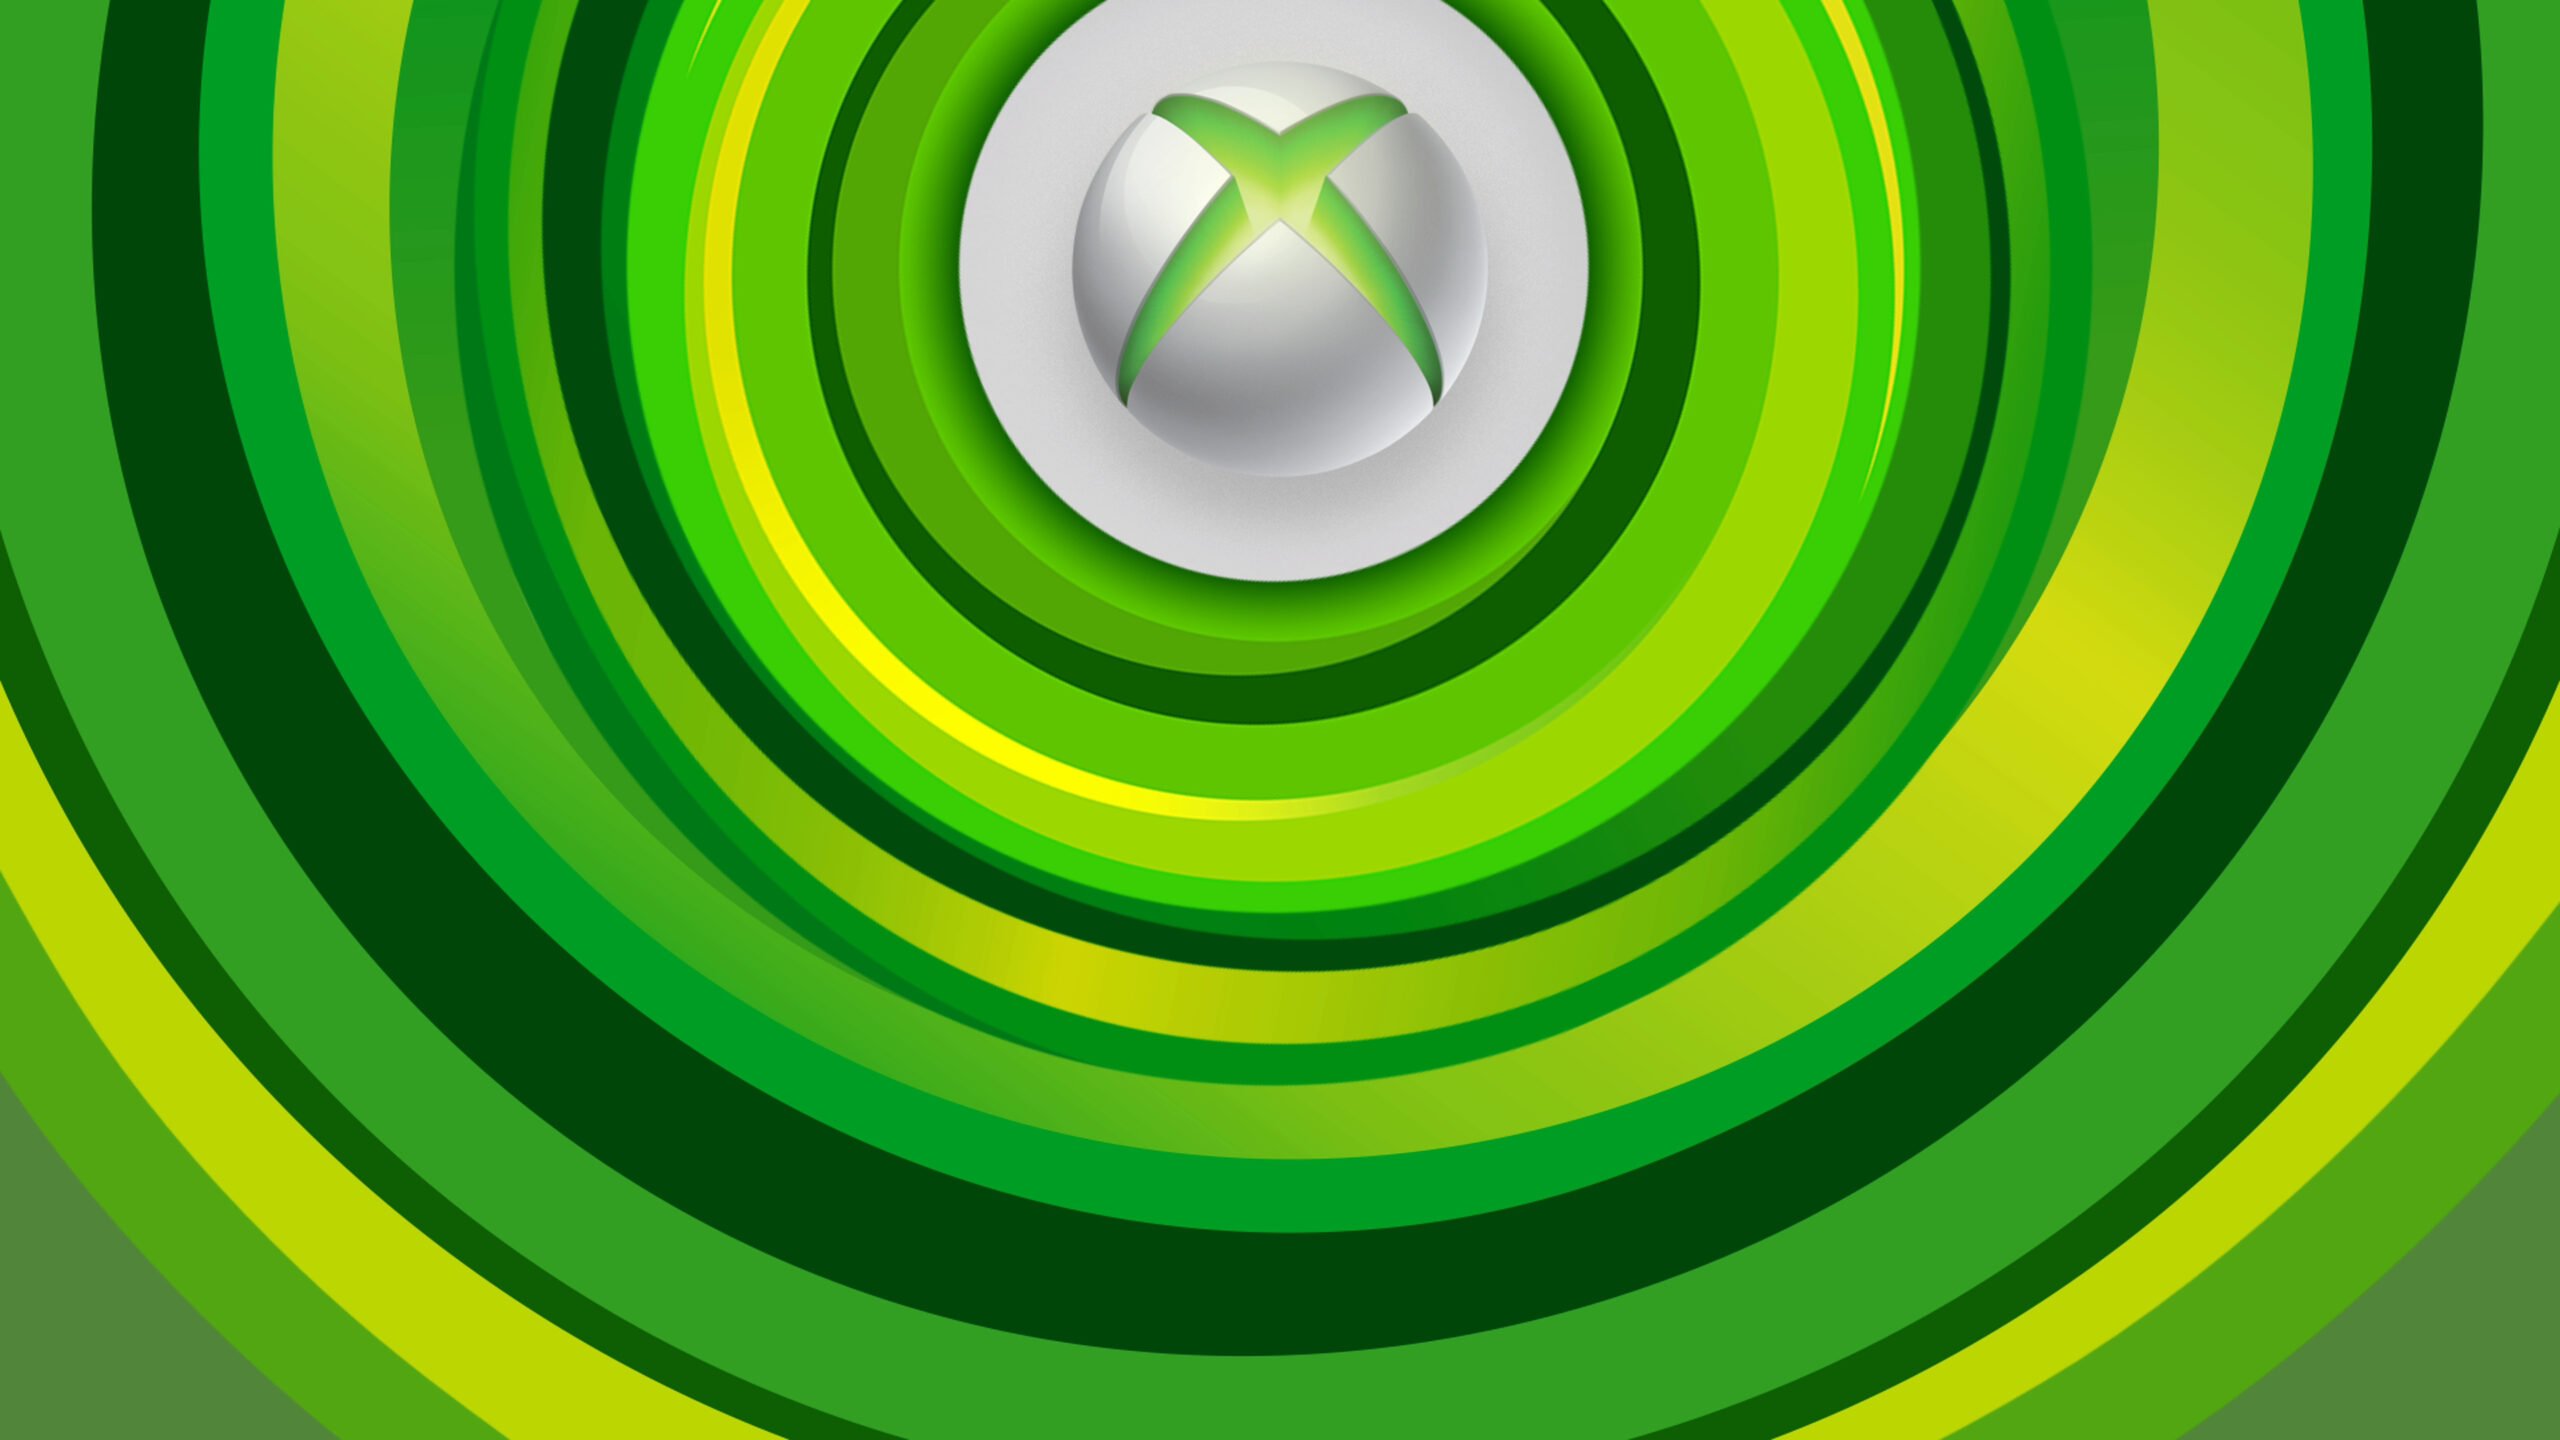 Knockout City - Xbox Series X, Xbox One [Digital] 